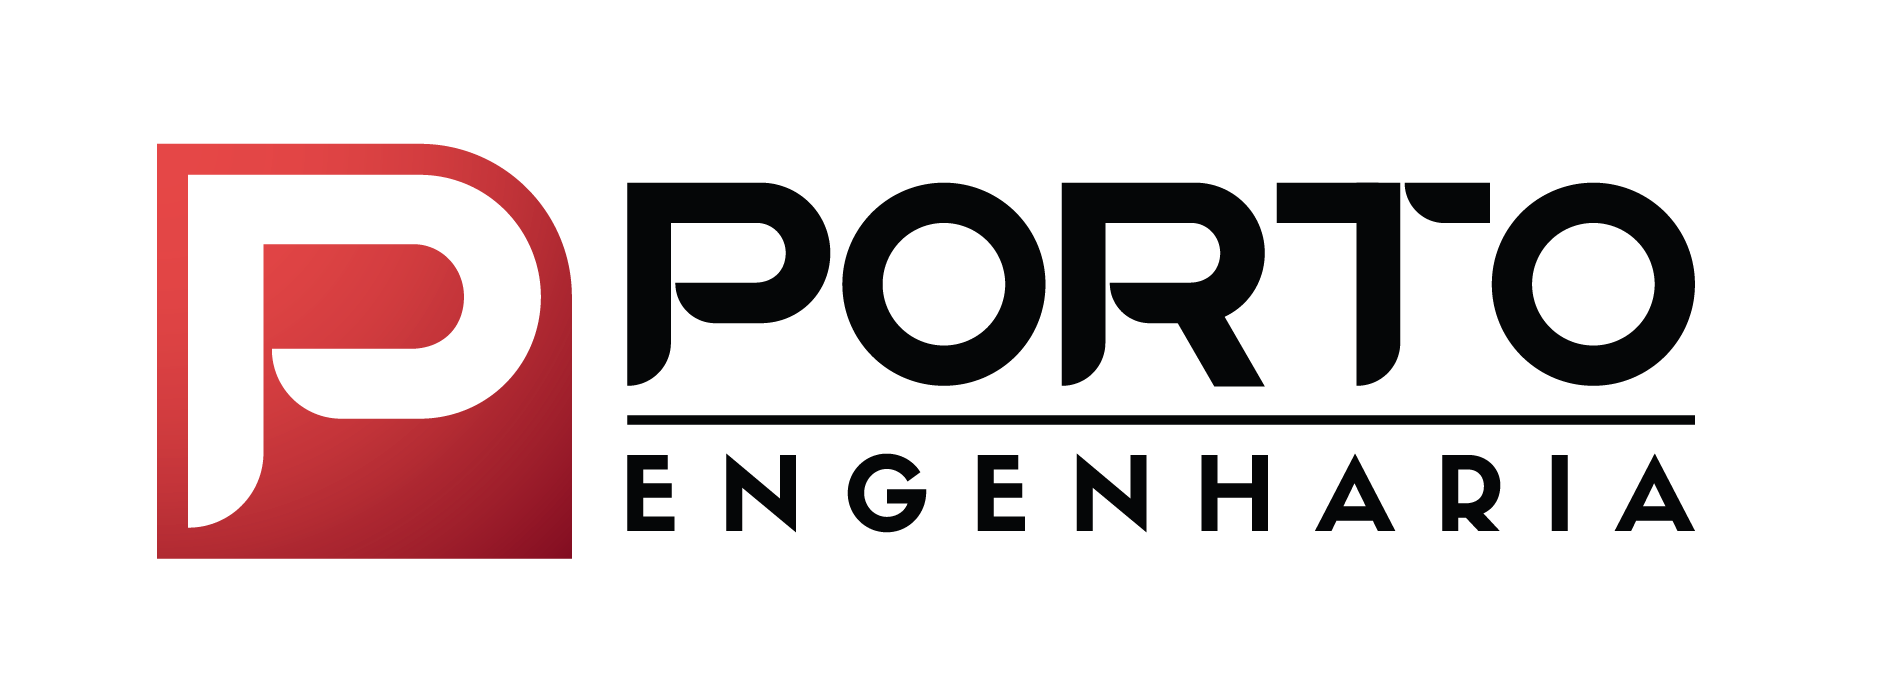 Porto Engenharia-Tradição na incorporação e construção civil de Pernambuco